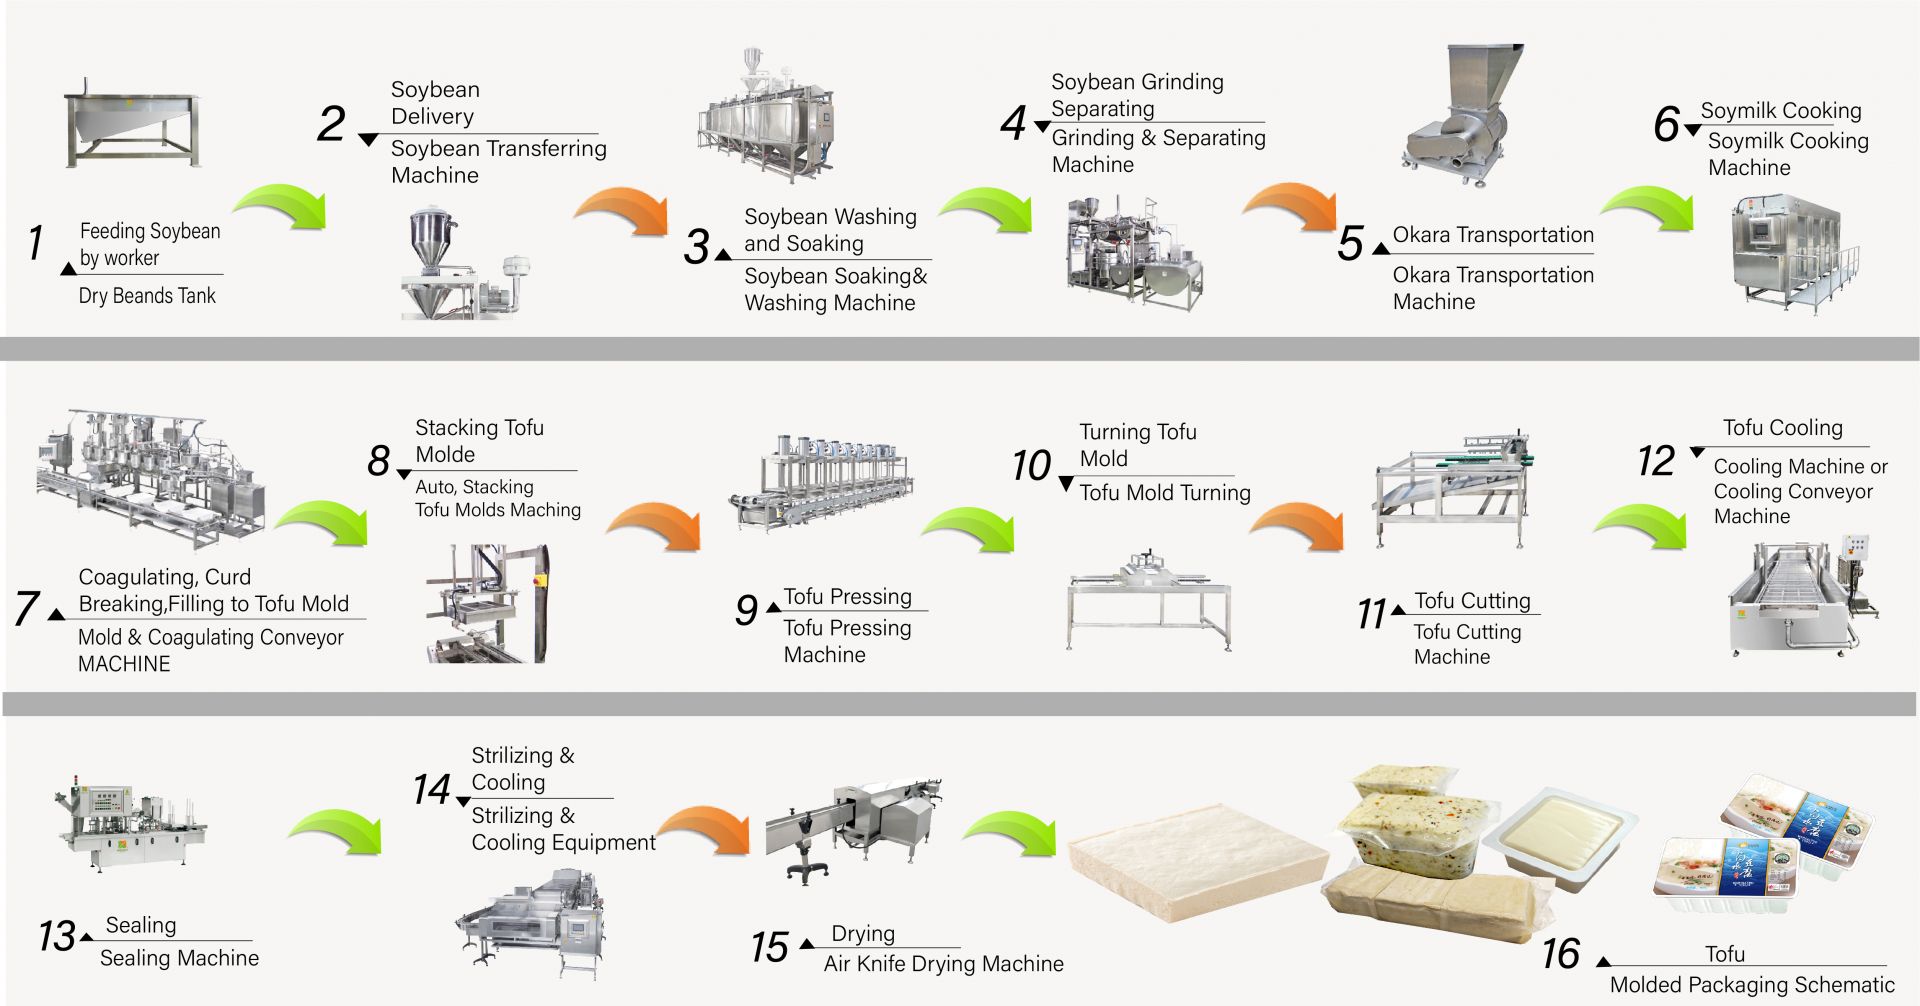 Wie man Tofu herstellt, Tofu herstellen, Tofu-Herstellungsprozess, Tofu-Herstellungsprozess, Tofu-Herstellung, Tofu-Herstellungsprozess, Tofu-Prozess, Tofu-Verarbeitungsmethode, Tofu-Verarbeitungsprozess, Tofu-Produktion, Tofu-Produktionsflussdiagramm, Tofu-Produktionsprozess, Tofu-Produktionsprozess, automatische Tofumaschine, automatische Tofuherstellungsmaschine, kommerzielle Tofumaschine, Easy Tofu Maker, gebratene Tofumaschine, industrielle Tofuherstellung, Sojalebensmittelgeräte, Sojafleischmaschine, Sojamilch- und Tofuherstellungsmaschine, Tofuausrüstung, Tofufabrik, Tofumaschine, Tofumaschine zum Verkauf, Tofumaschinenhersteller, Tofumaschinenhersteller, Tofumaschinenpreis, Tofumaschinen, Tofu-Maschinen und -Ausrüstung, Tofu-Hersteller, Tofu-Herstellungsmaschine, Tofu-Herstellung, Tofu-Herstellungsausrüstung, Tofu-Herstellungsmaschine, Tofu-Herstellungsmaschinenpreis, Tofu-Hersteller, Tofu-Herstellung, Tofu-Herstellungsausrüstung, Tofu-Herstellungsfabrik, Tofu-Herstellungsanlage, Tofu-Produktionsausrüstung, Tofu-Produktionsfabrik, Tofu-Produktionslinie, Tofu-Produktionslinienpreis, Tofuhersteller, Vegane Fleischmaschine, Vegane Fleischproduktionslinie, Gemüse-Tofu-Maschinen und -Ausrüstungen